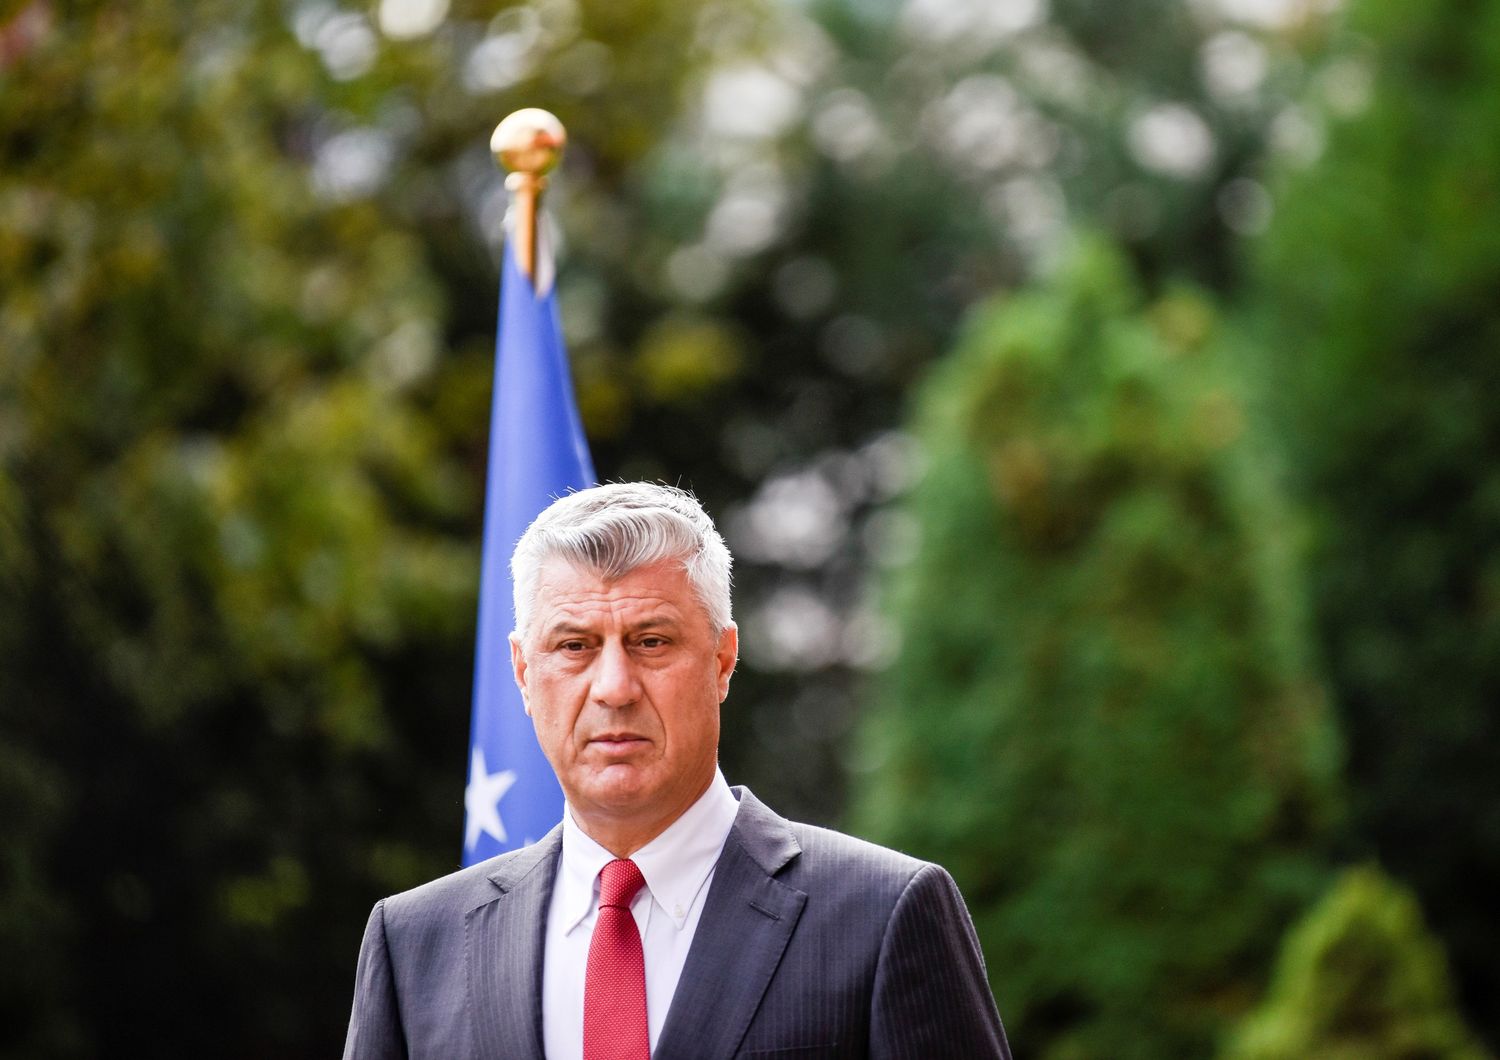 Il presidente del Kosovo, Hashim Thaci